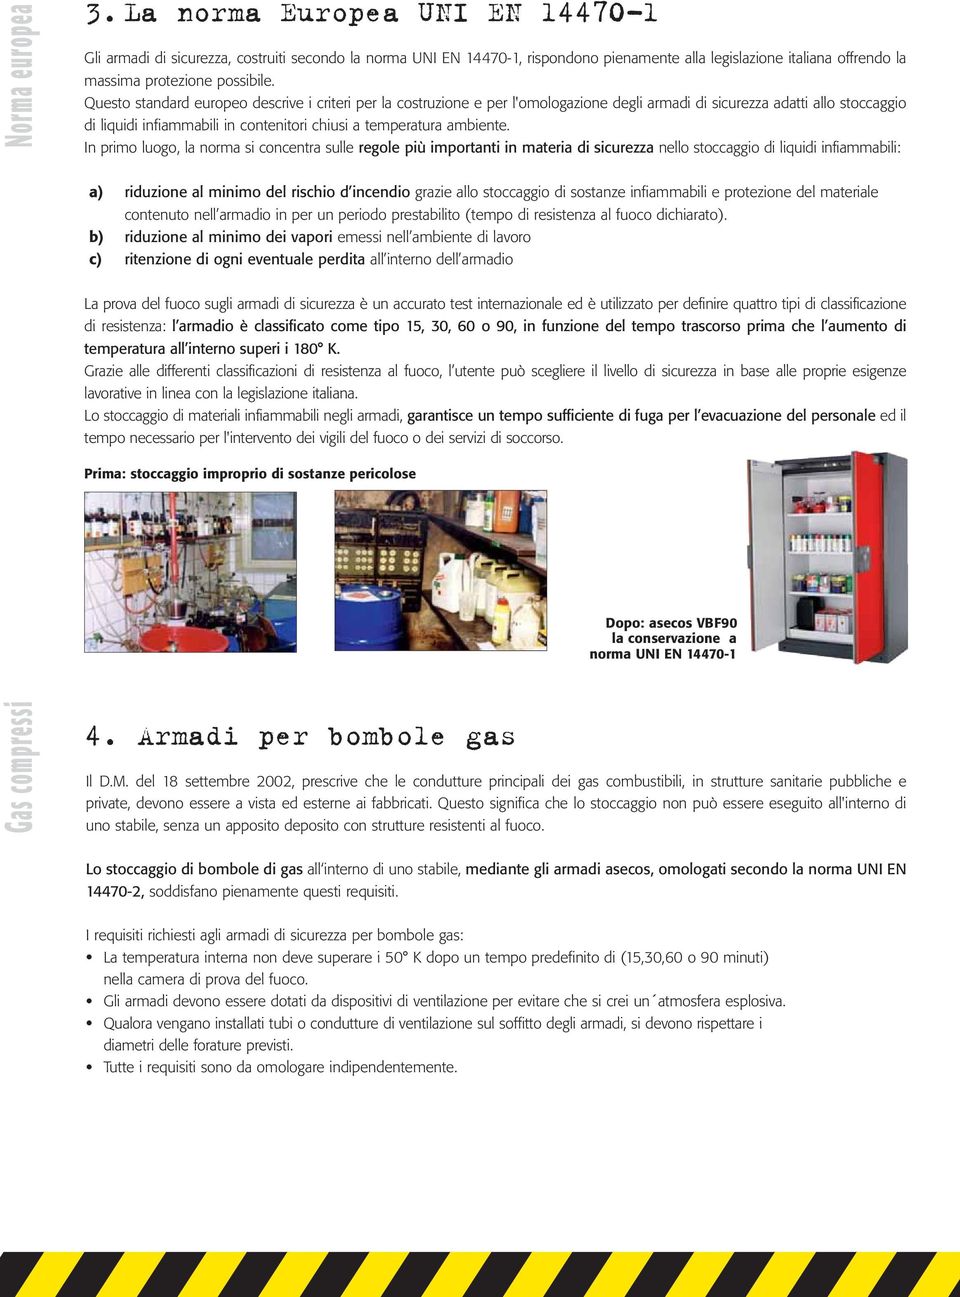 Questo standard europeo descrive i criteri per la costruzione e per l'omologazione degli armadi di sicurezza adatti allo stoccaggio di liquidi infiammabili in contenitori chiusi a temperatura